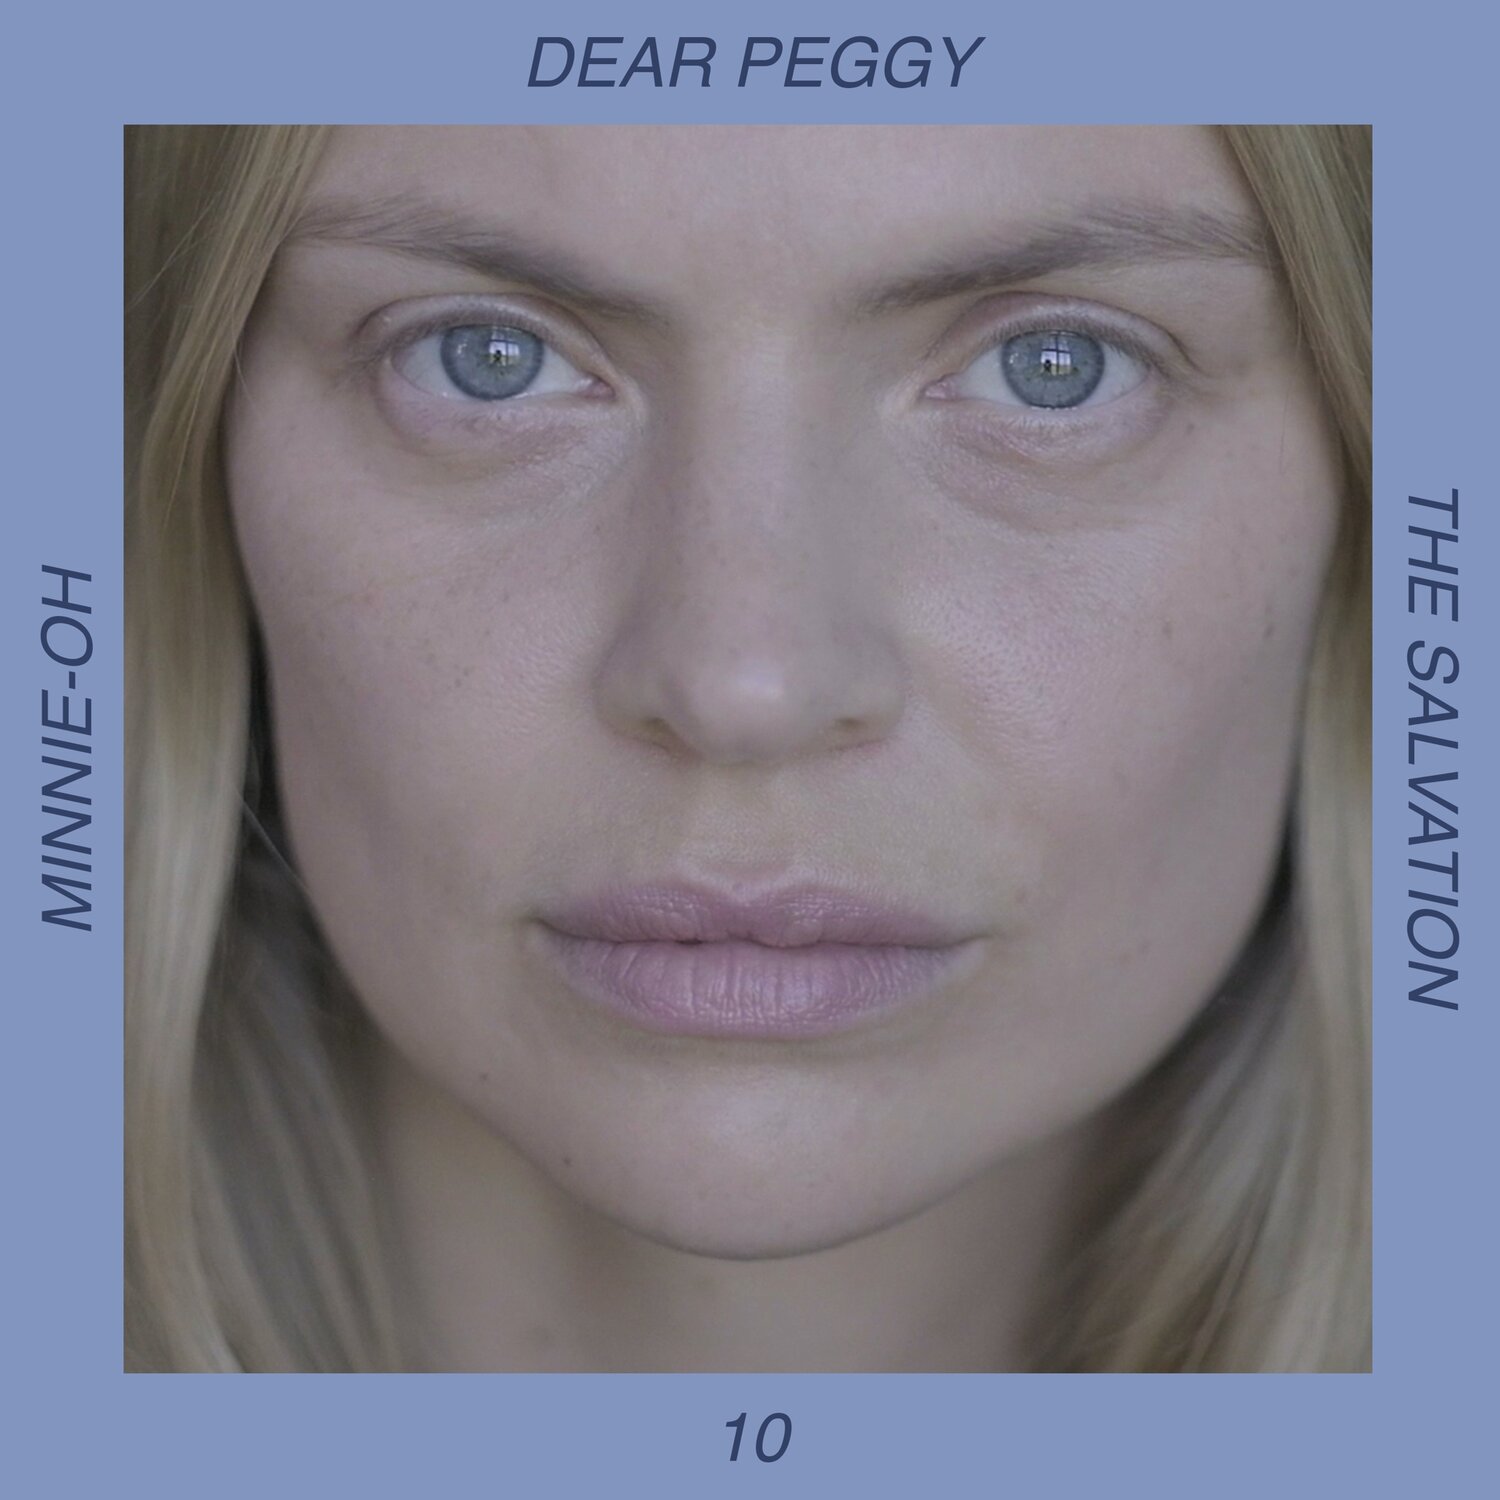 10. Dear Peggy